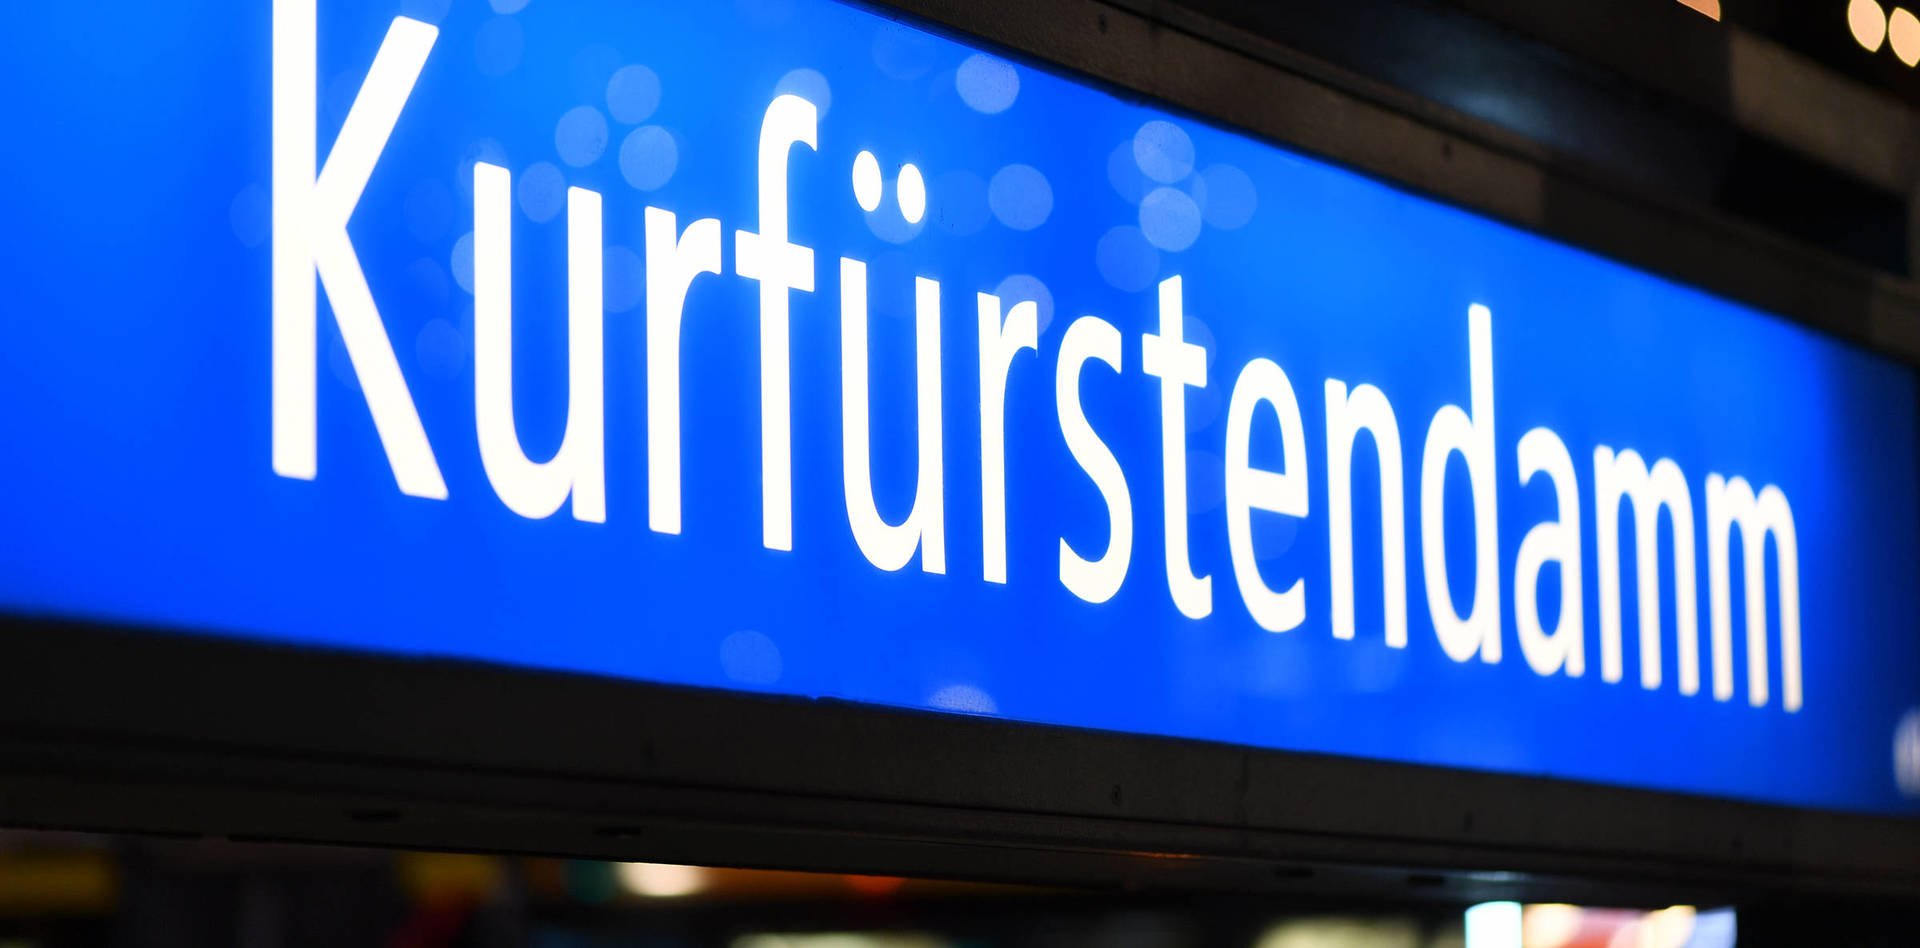 Kurfürstendamm – exklusiver Boulevard für Shopping und Kultur in Berlin - H-Hotels.com